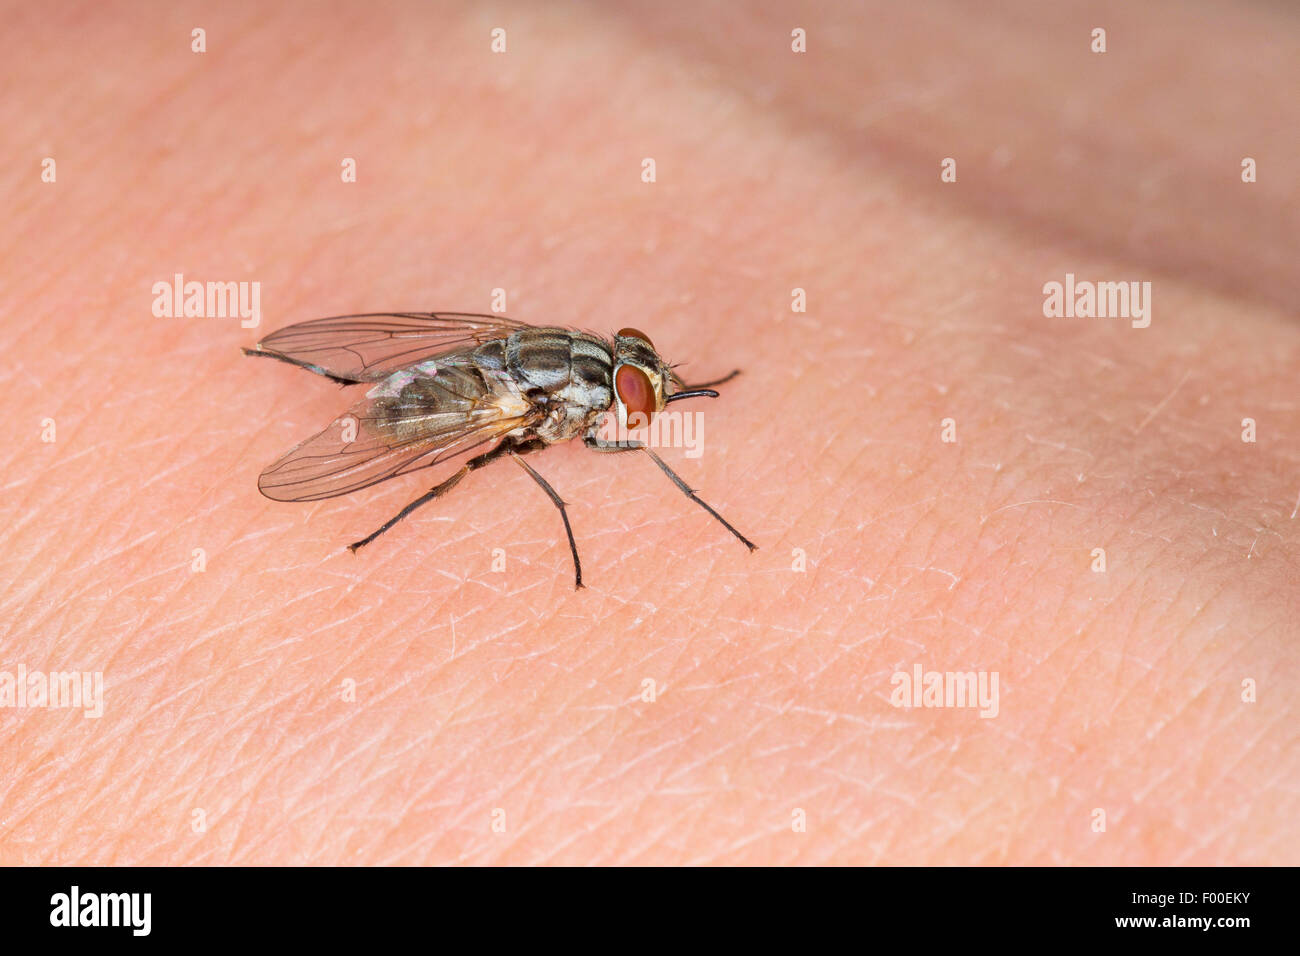 Mosca de los establos, perro volar, picadura de mosca común (Stomoxys calcitrans), en la piel humana. Foto de stock